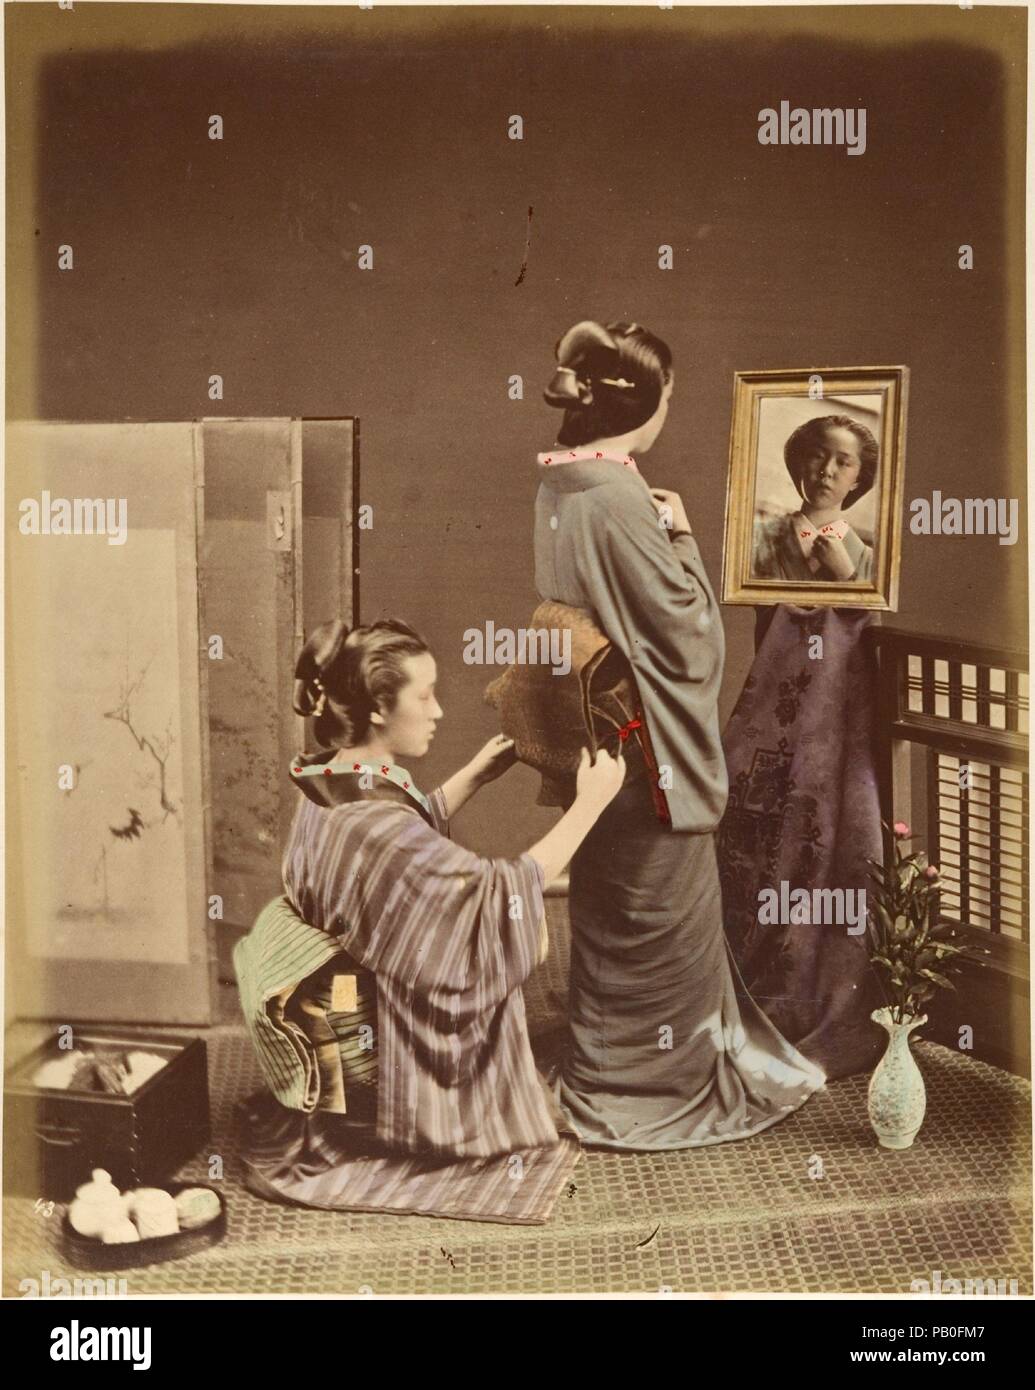 [Zwei japanische Frauen in traditioneller Kleidung]. Artist: Suzuki Shin'ichi (Japanisch, 1835-1919). Abmessungen: 25,2 x 19,9 cm (9 15/16 x 7 13/16 in.). Datum: 1870. Museum: Metropolitan Museum of Art, New York, USA. Stockfoto